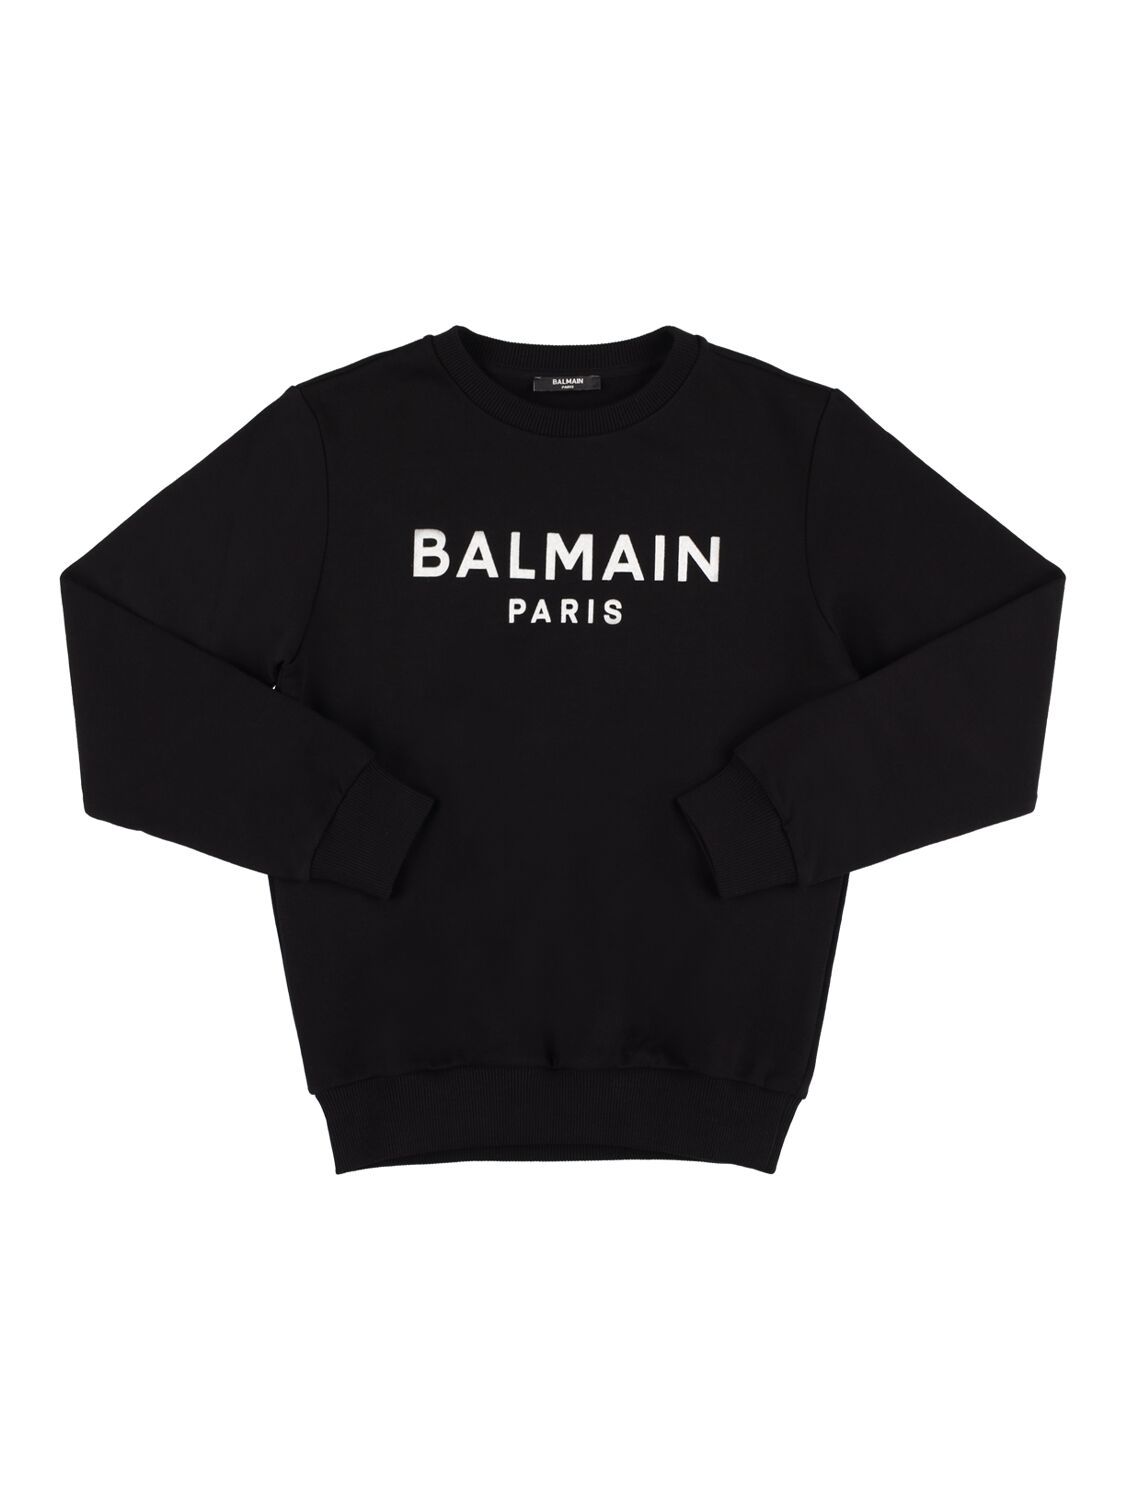 Balmain Kids' Printed Organic Cotton Sweatshirt In Black